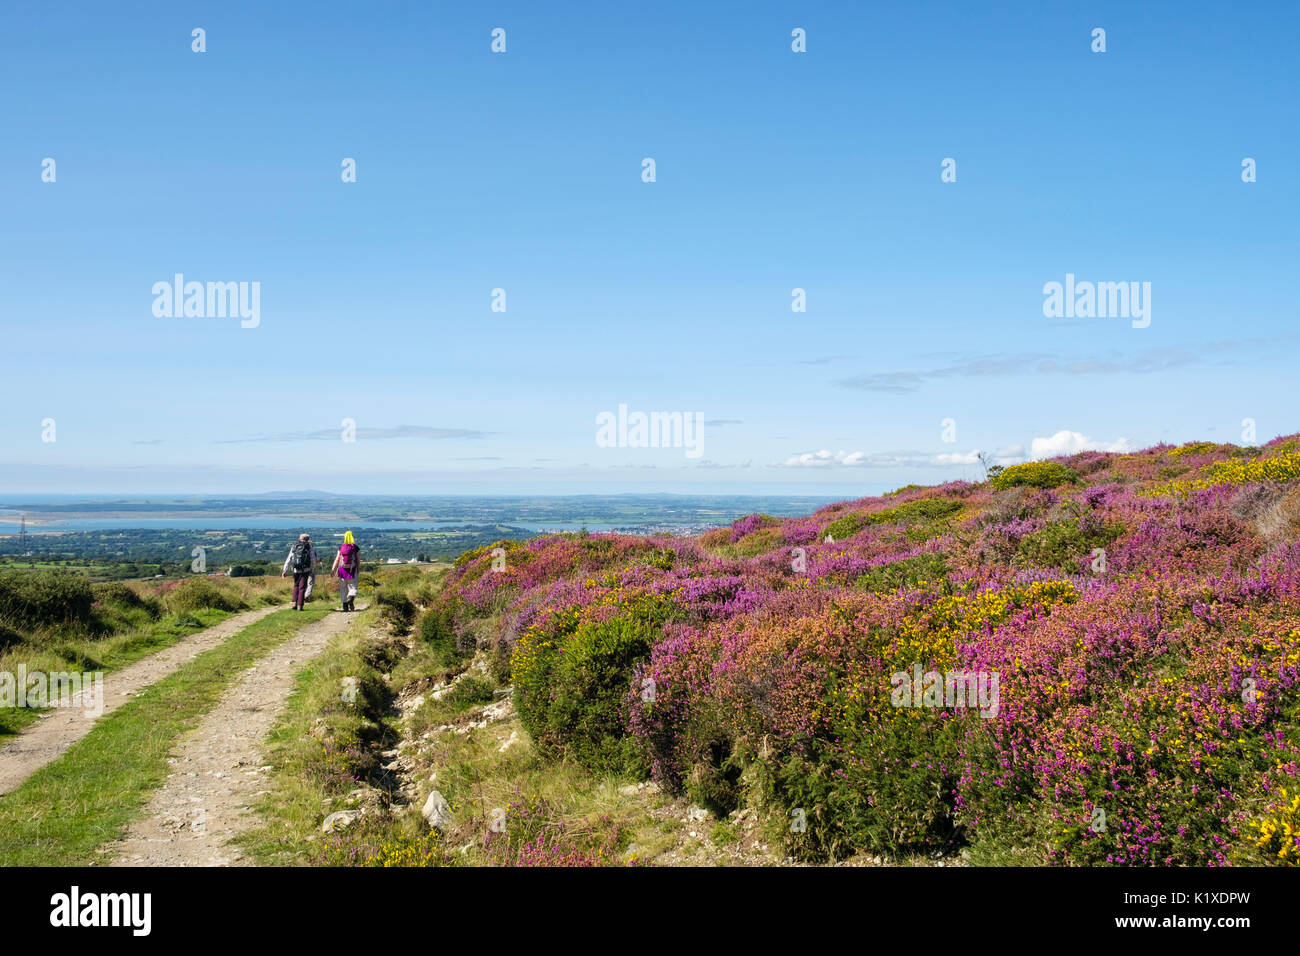 Randonneurs marchant sur la piste de marche autour de Moel Smytho Moorland couvert de floraison Heather et Gorse à la fin de l'été Caernarfon Gnynedd pays de Galles Royaume-Uni Grande-Bretagne Banque D'Images